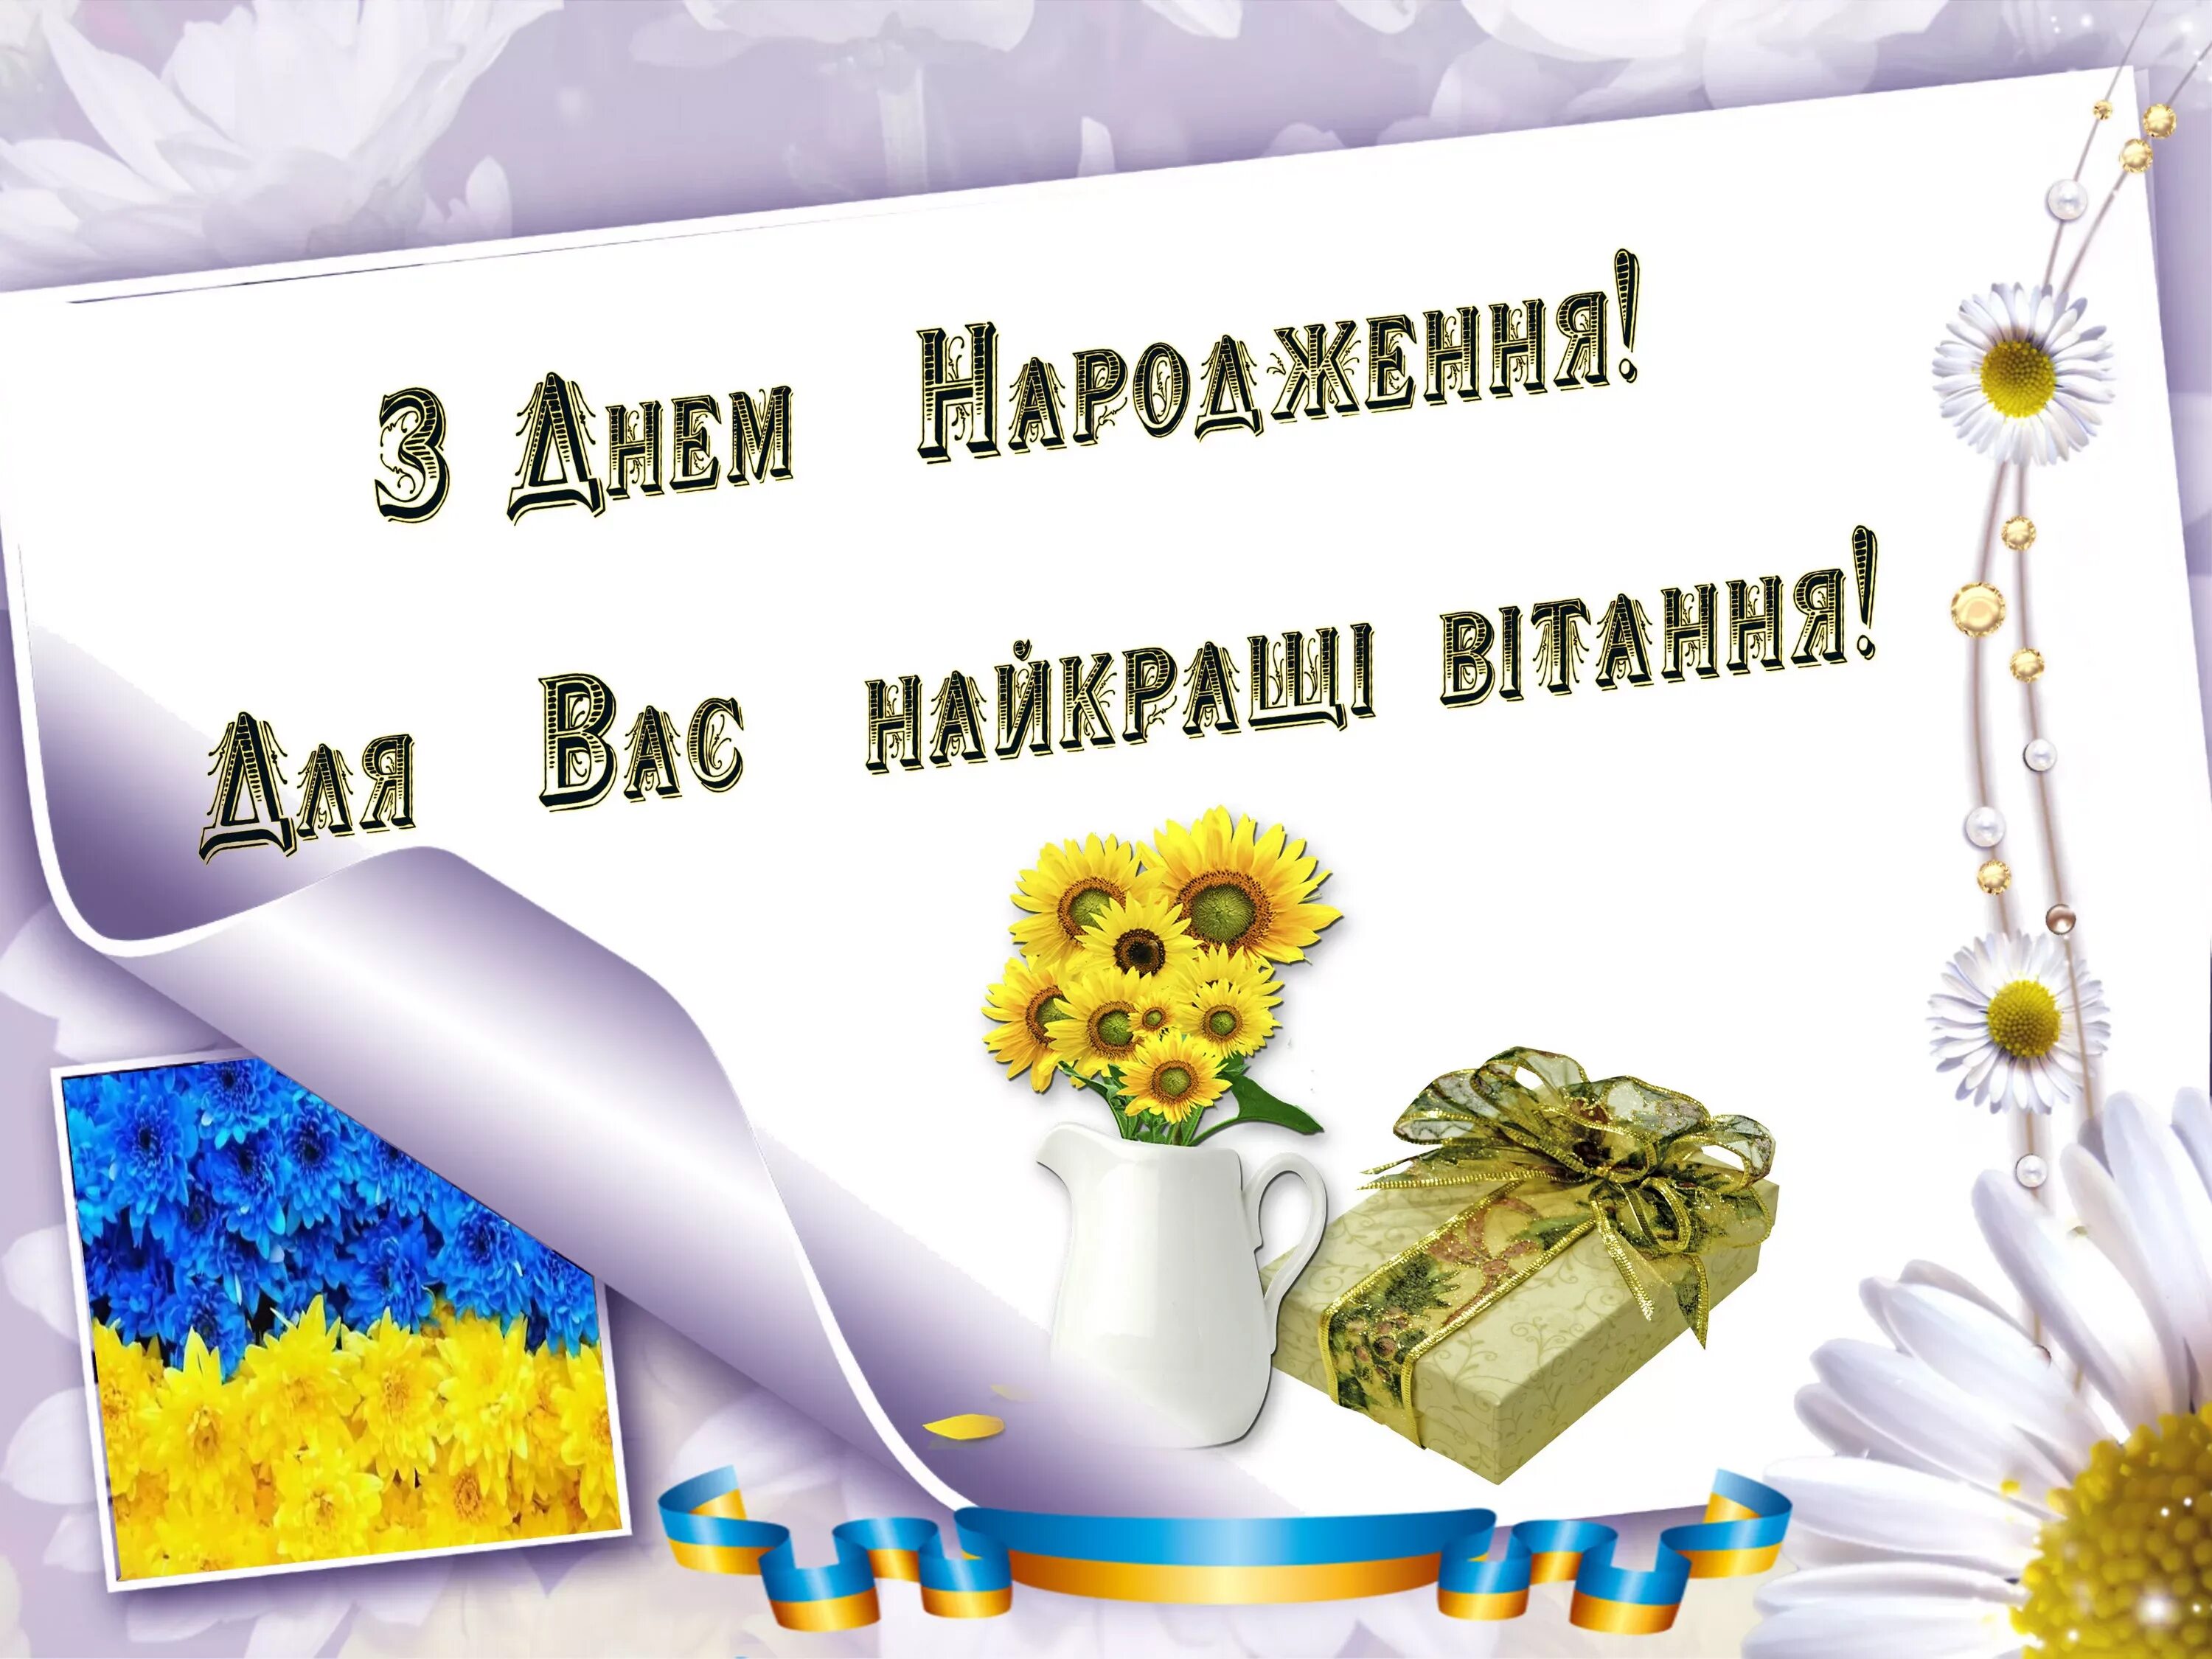 Слова з привітанням. Привітання з днем народження. Открытка с днем народження на украинском. З днем народження українською. Найщиріші вітання з днем народження.